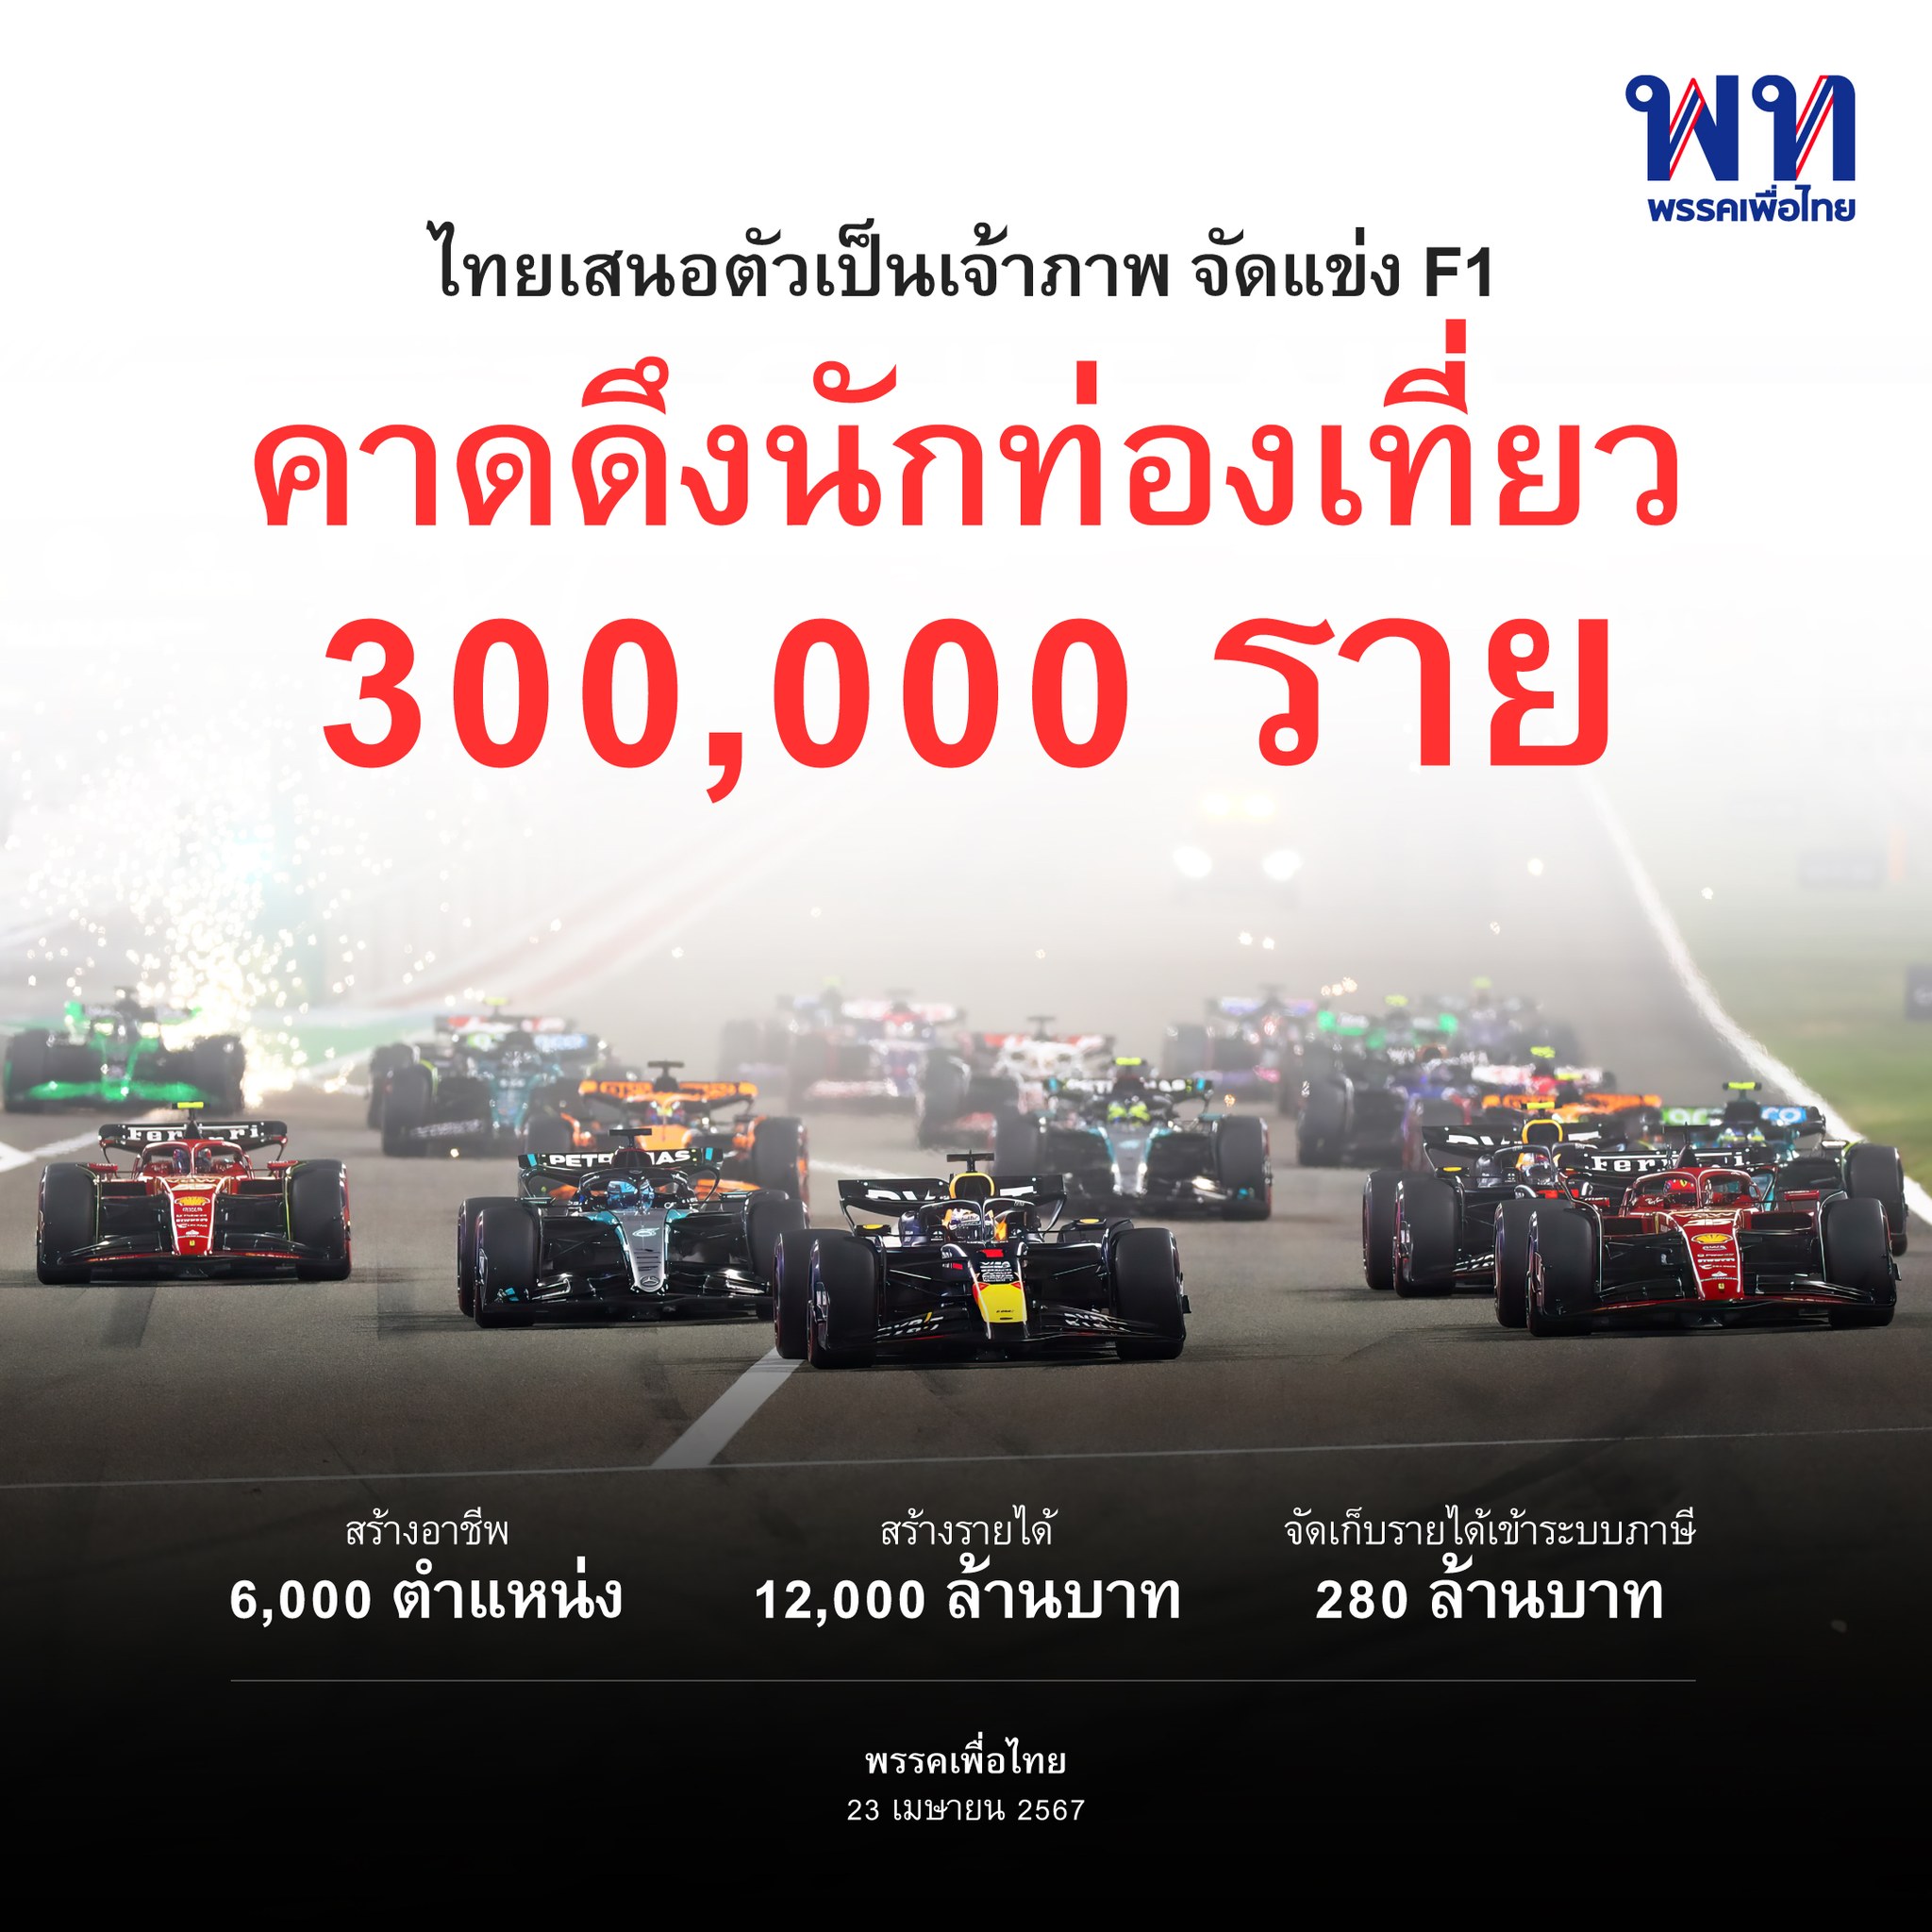 รัฐบาลคาดหากการแข่งขัน F1 เกิดขึ้นในไทยจริง จะดึงนักท่องเที่ยวได้ถึง​ 3 แสน​ราย สร้างรายได้ถึง​ 12,000 ล้านบาท​ สร้างอาชีพ​เพิ่ม 6,000 ตำแหน่ง